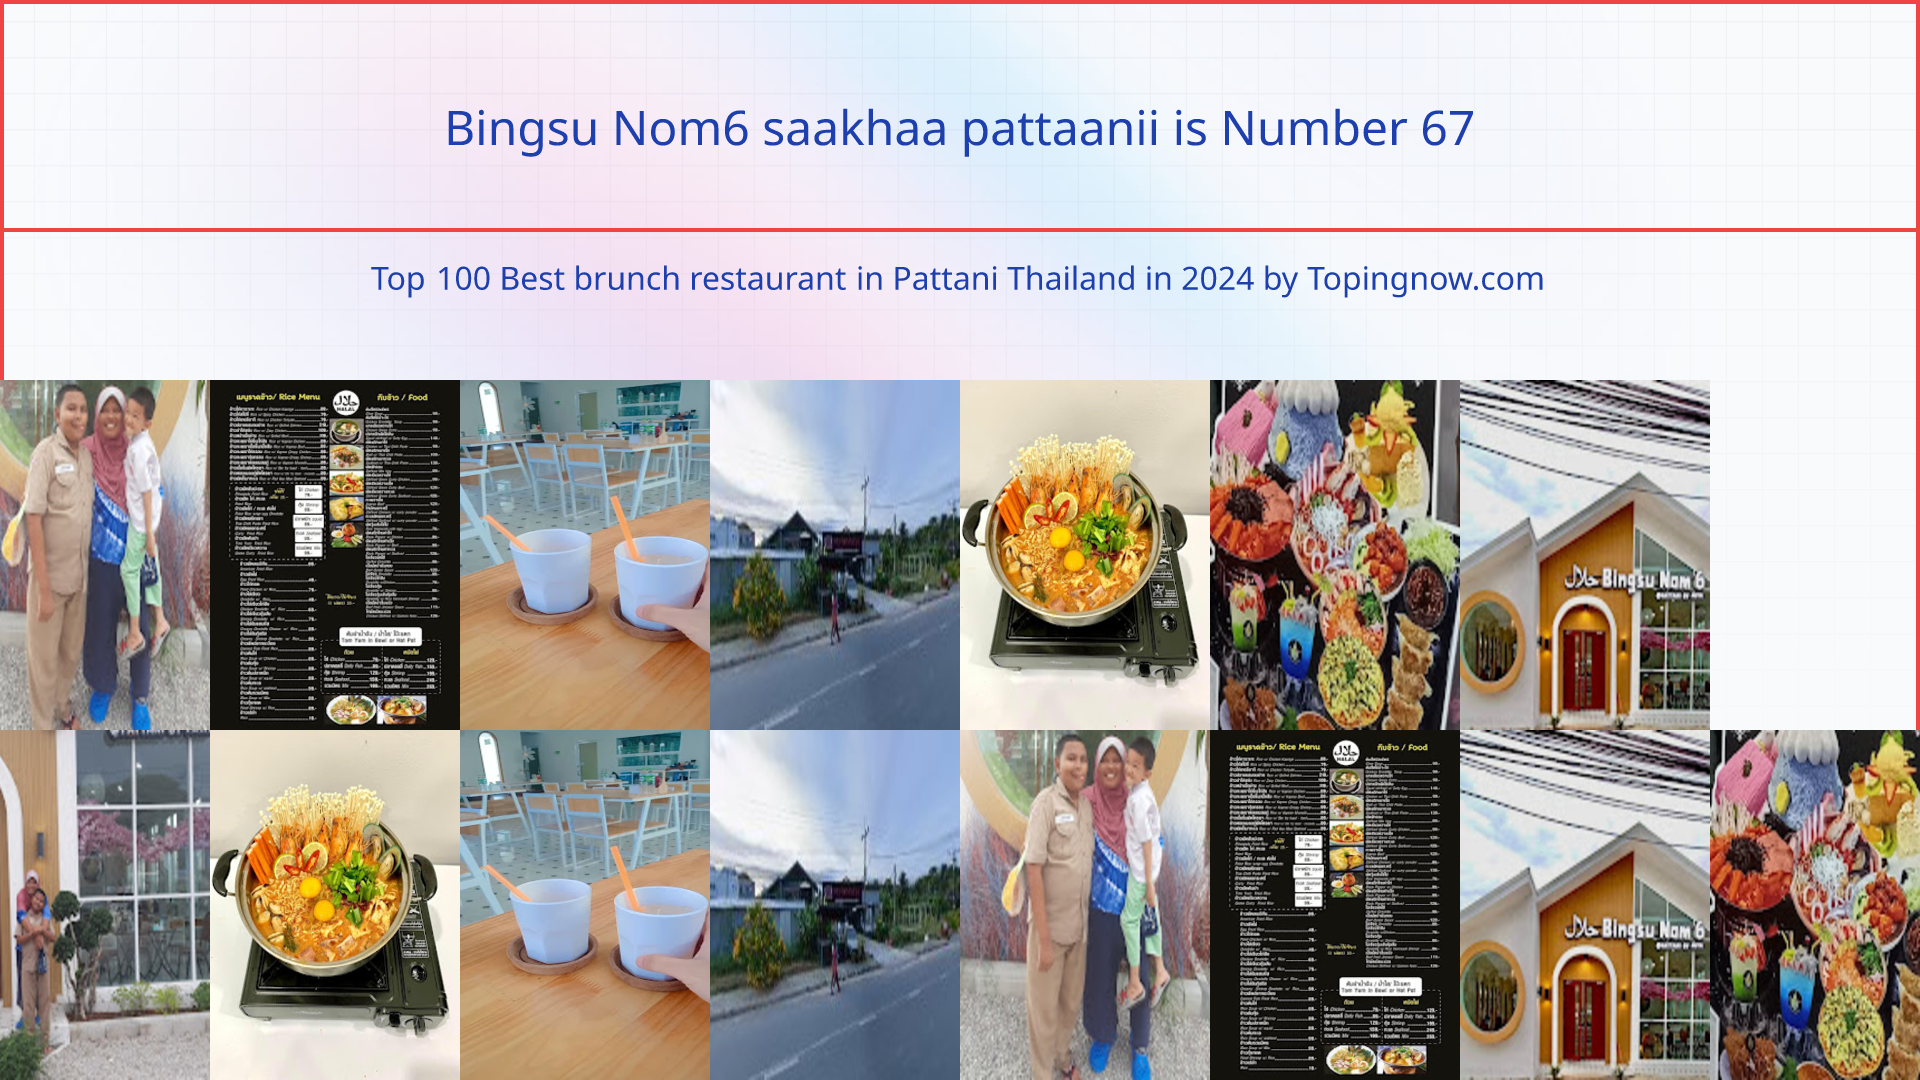 Bingsu Nom6 saakhaa pattaanii: Top 100 Best brunch restaurant in Pattani Thailand in 2024